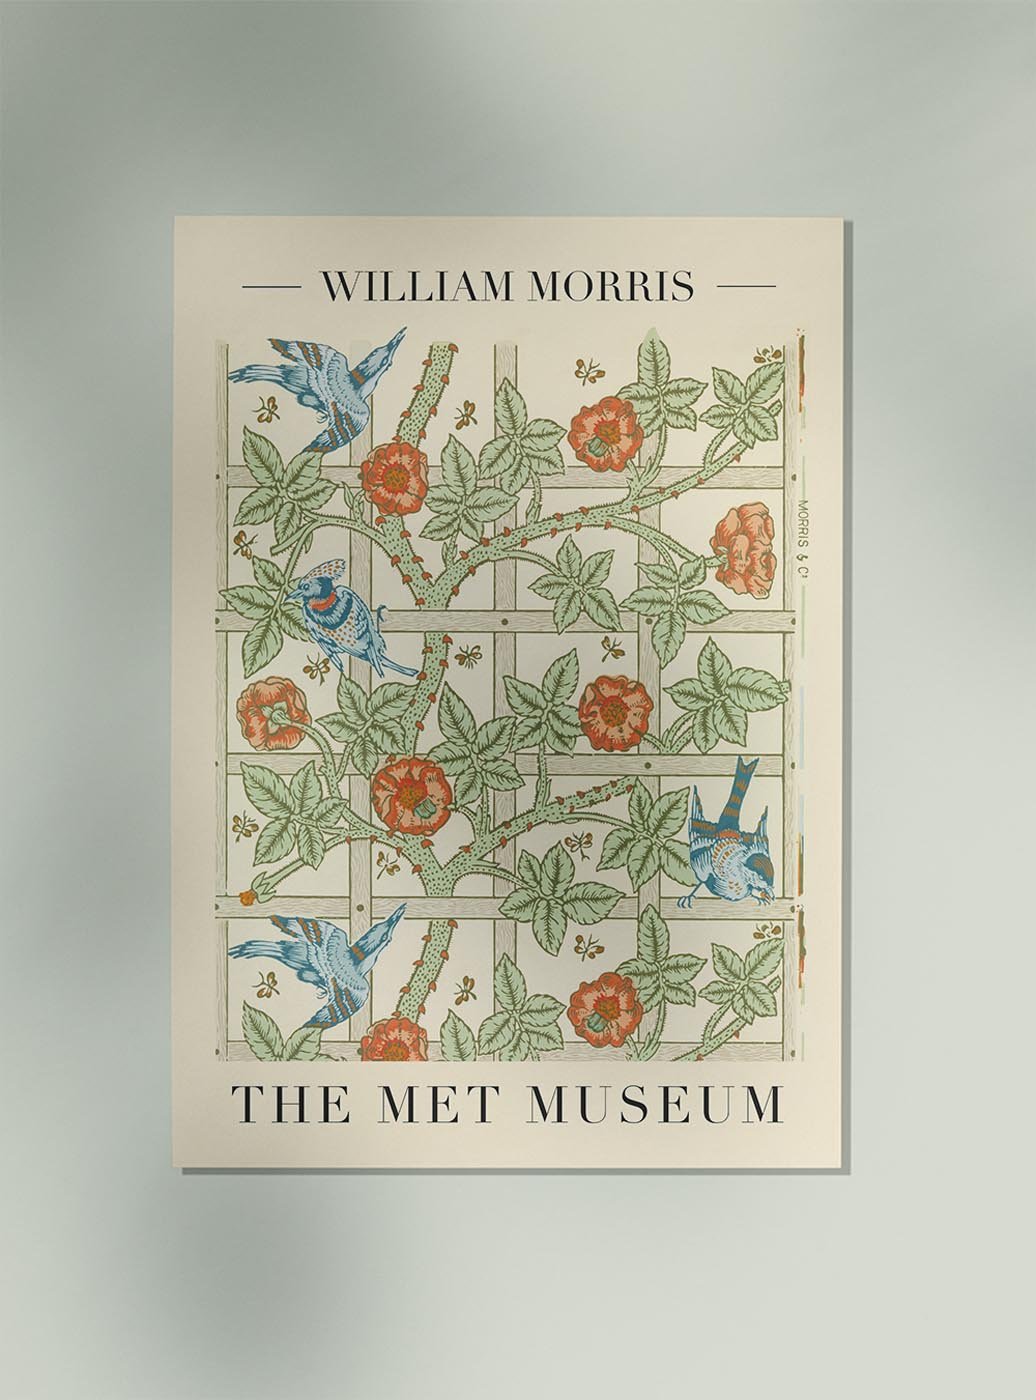 William Morris Trellis Art Exhibition Poster